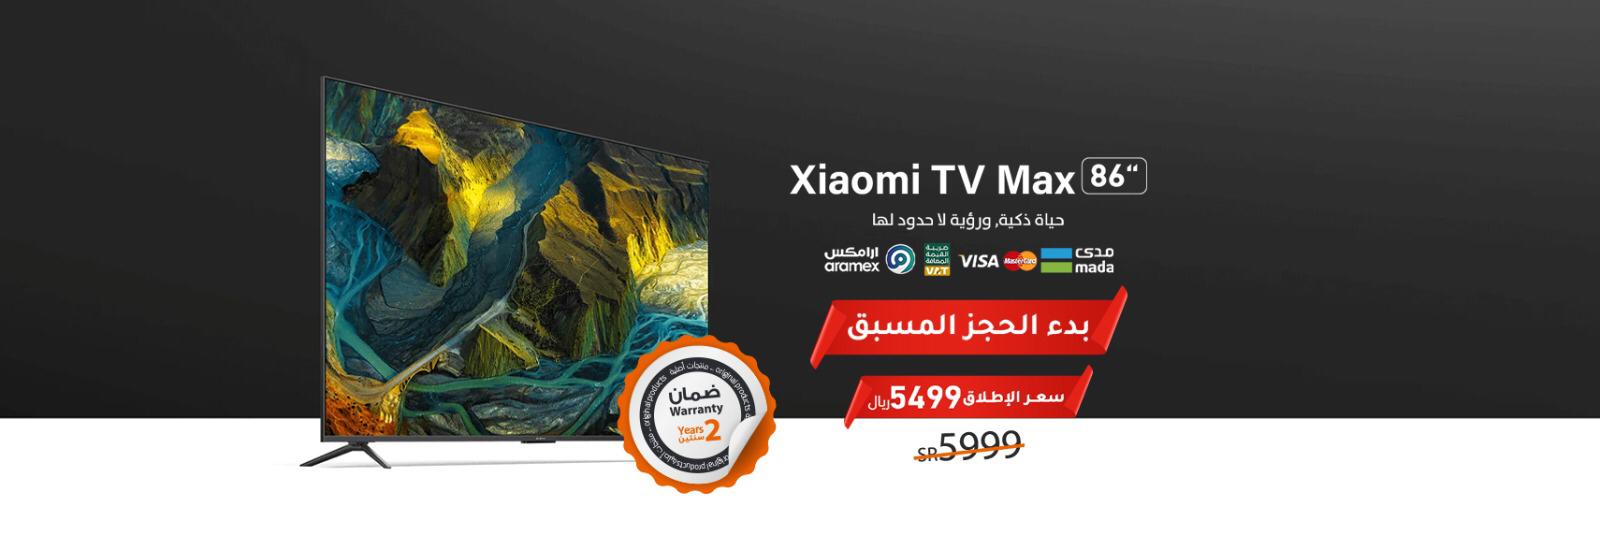 Xiaomi-TV-MAX-86